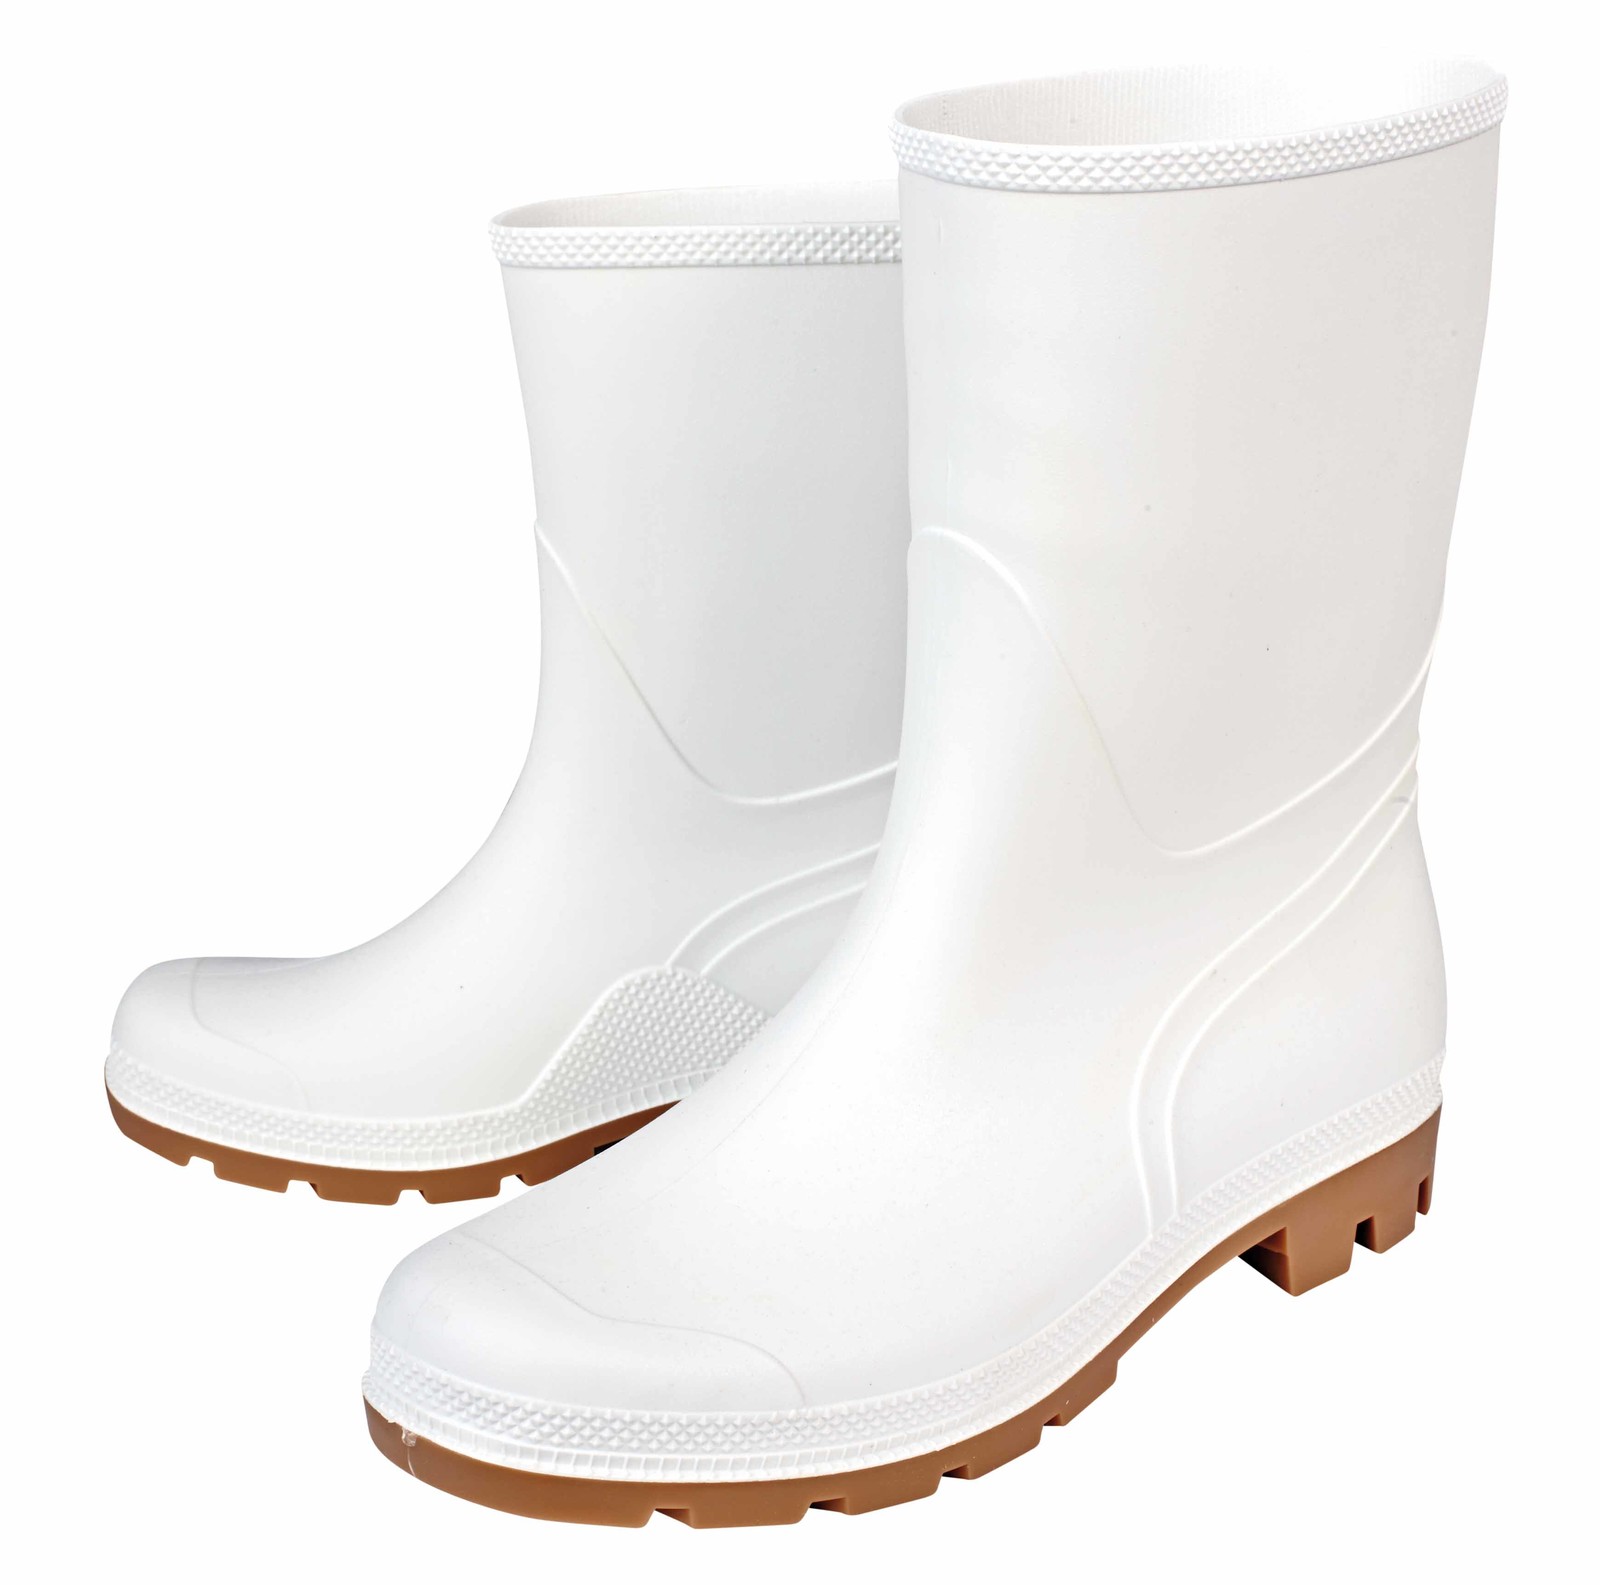 Gumáky Boots Troncheto PVC nízke - veľkosť: 43, farba: biela